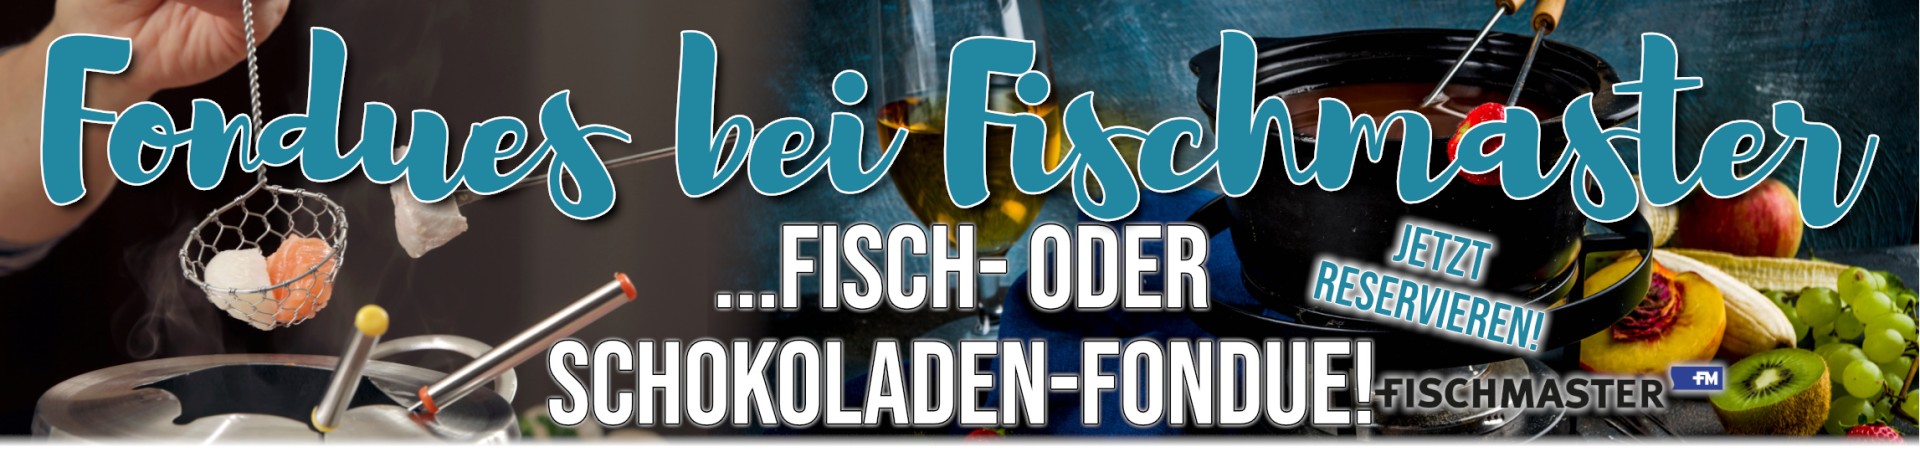 Fischmaster Fondues Fisch- oder Schoko-Fondue